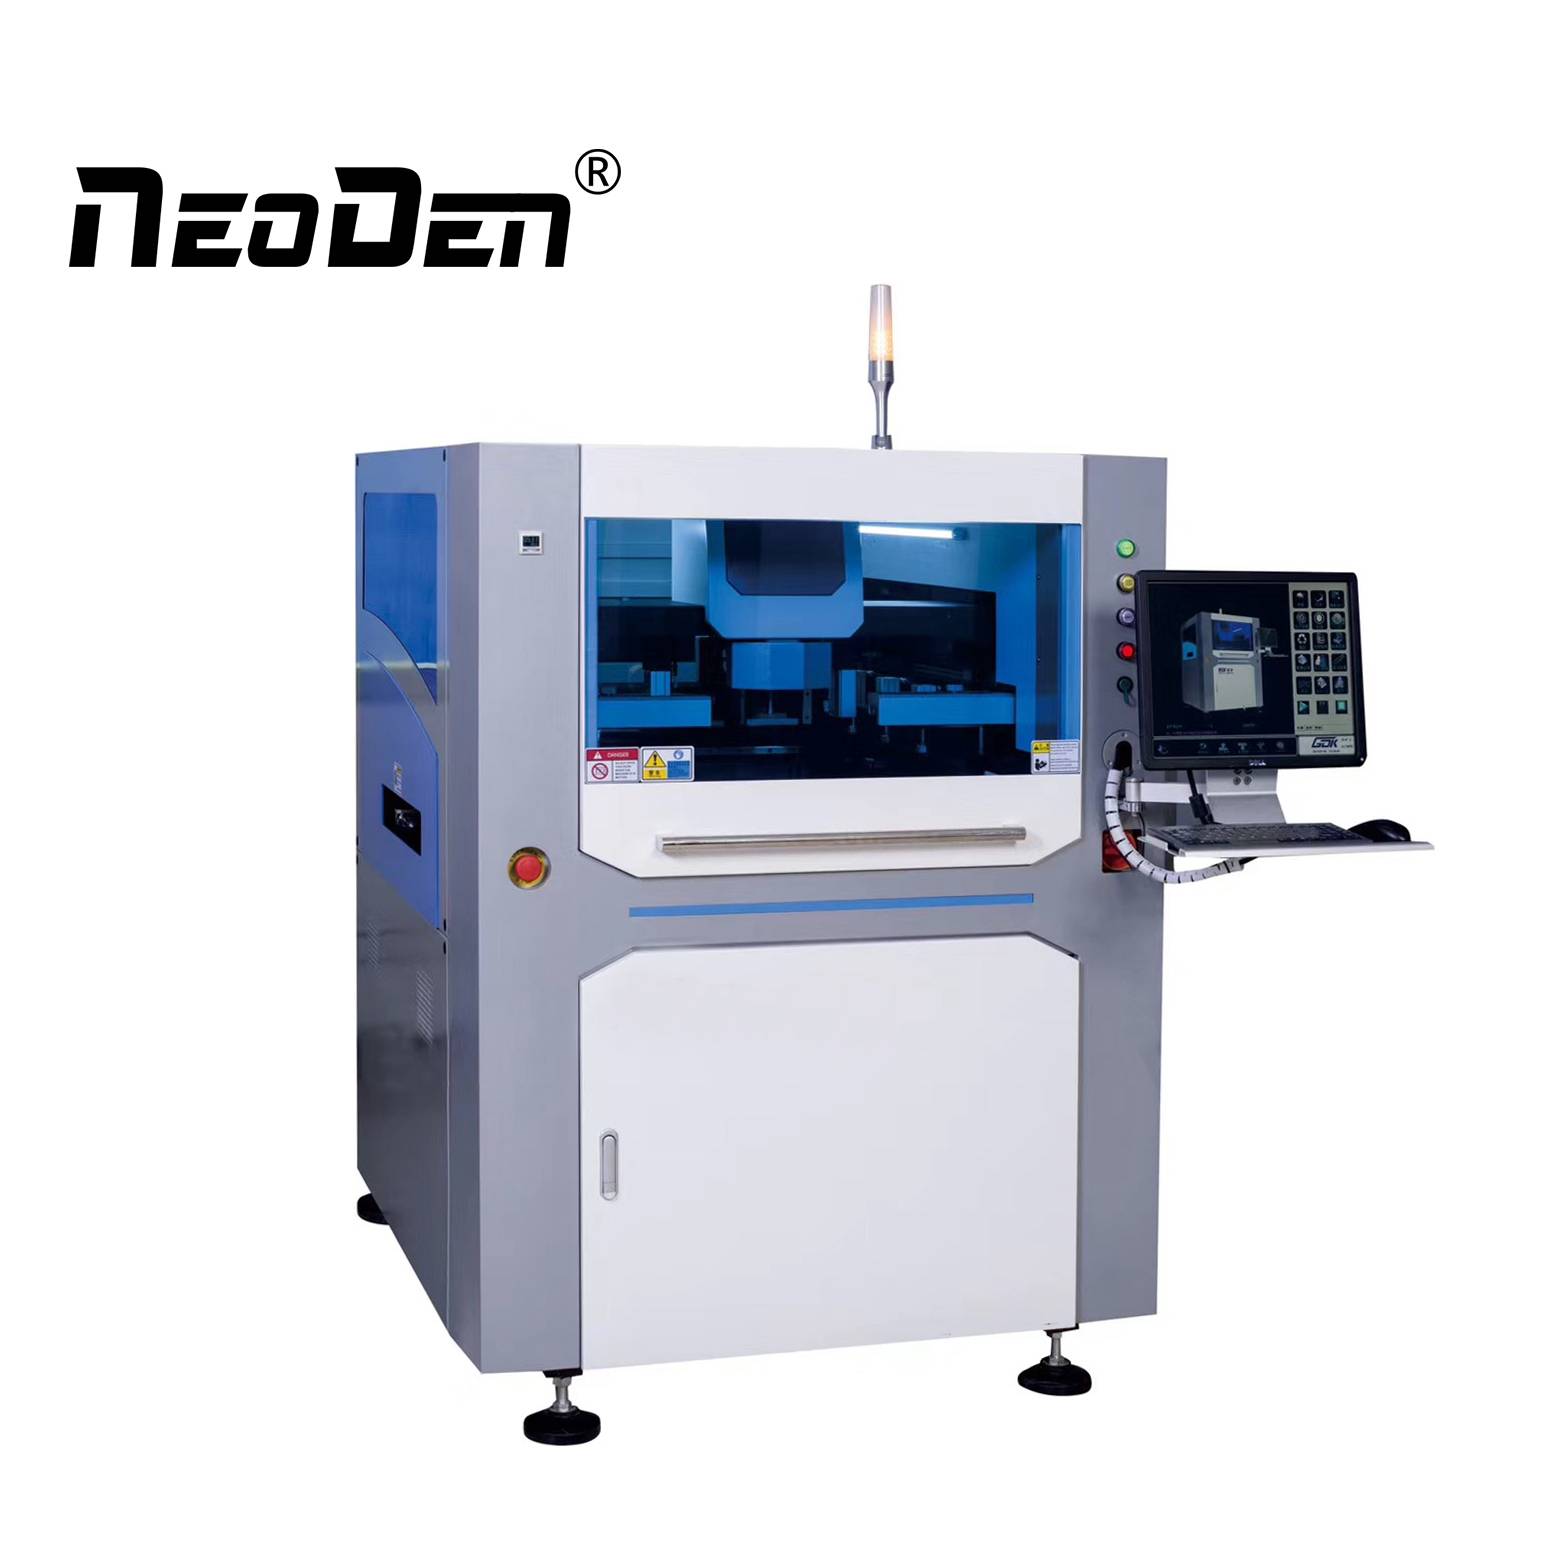 Princip rada i tehnika SMT automatske mašine za štampanje lemljene paste